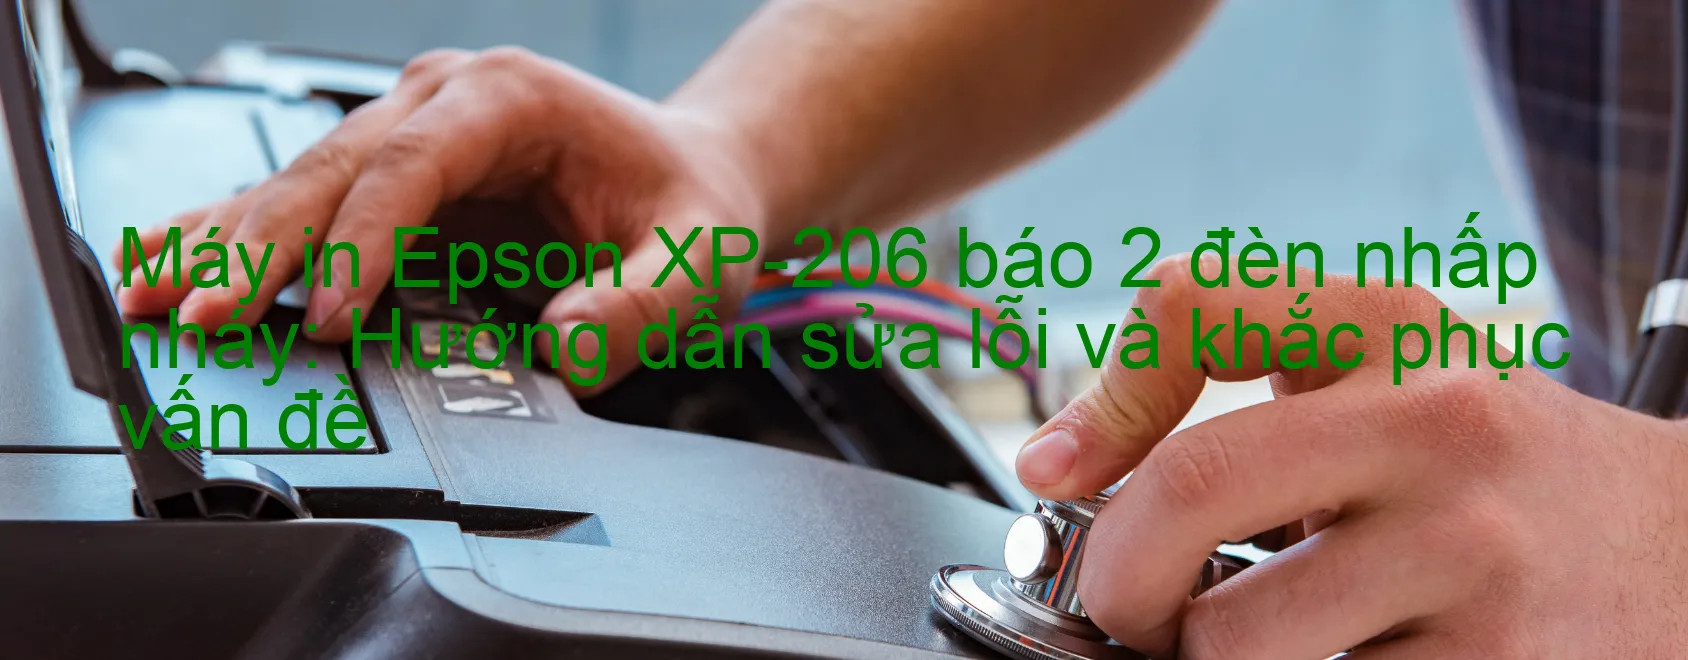 Máy in Epson XP-206 báo 2 đèn nhấp nháy: Hướng dẫn sửa lỗi và khắc phục vấn đề